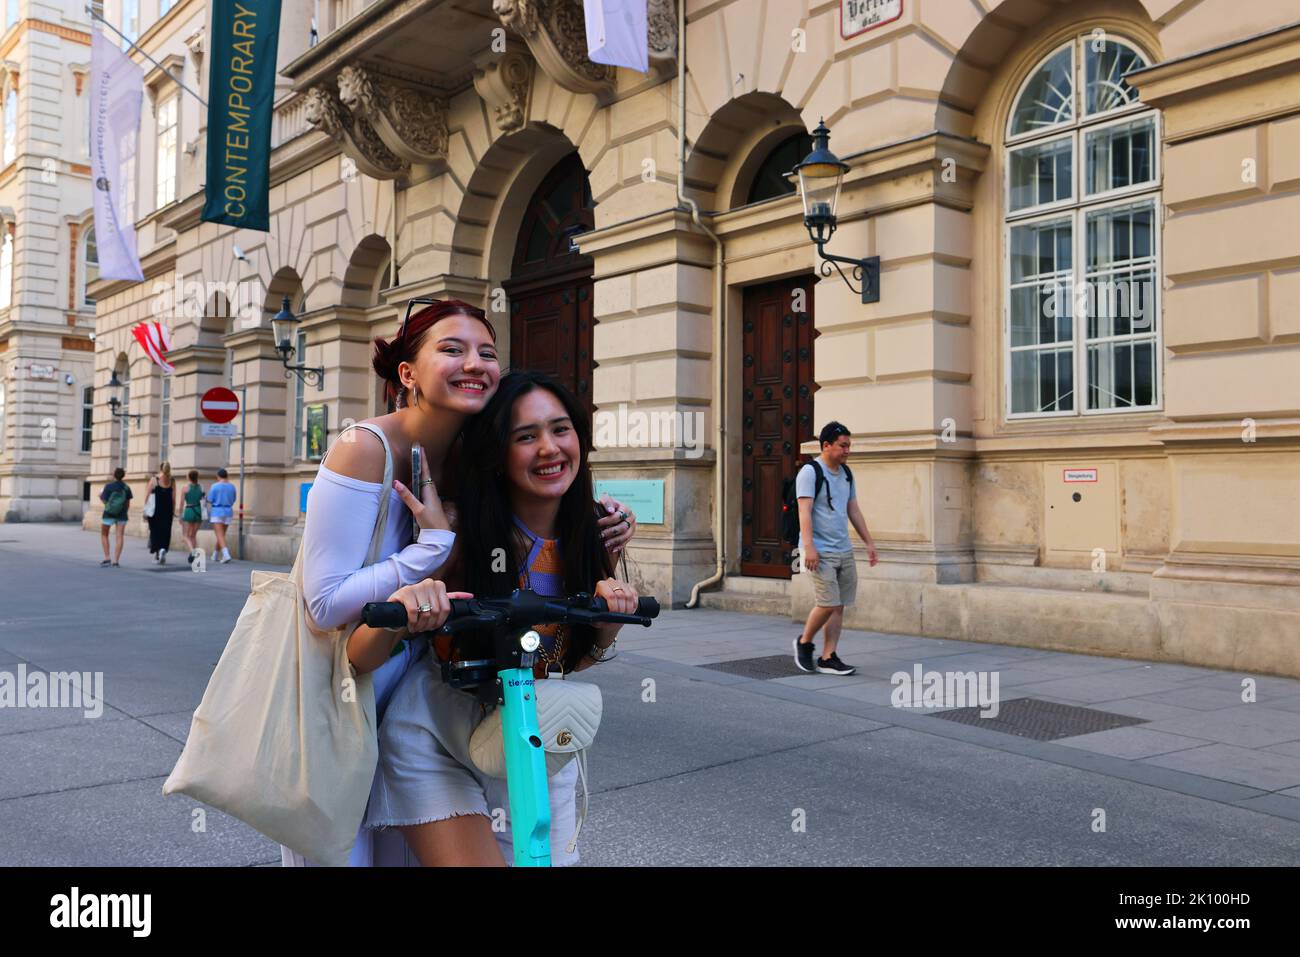 Wien, schöne Frauen, Cityroller, 2 Frauen mit EScooter in Vienna haben Spaß und Freude Stock Photo